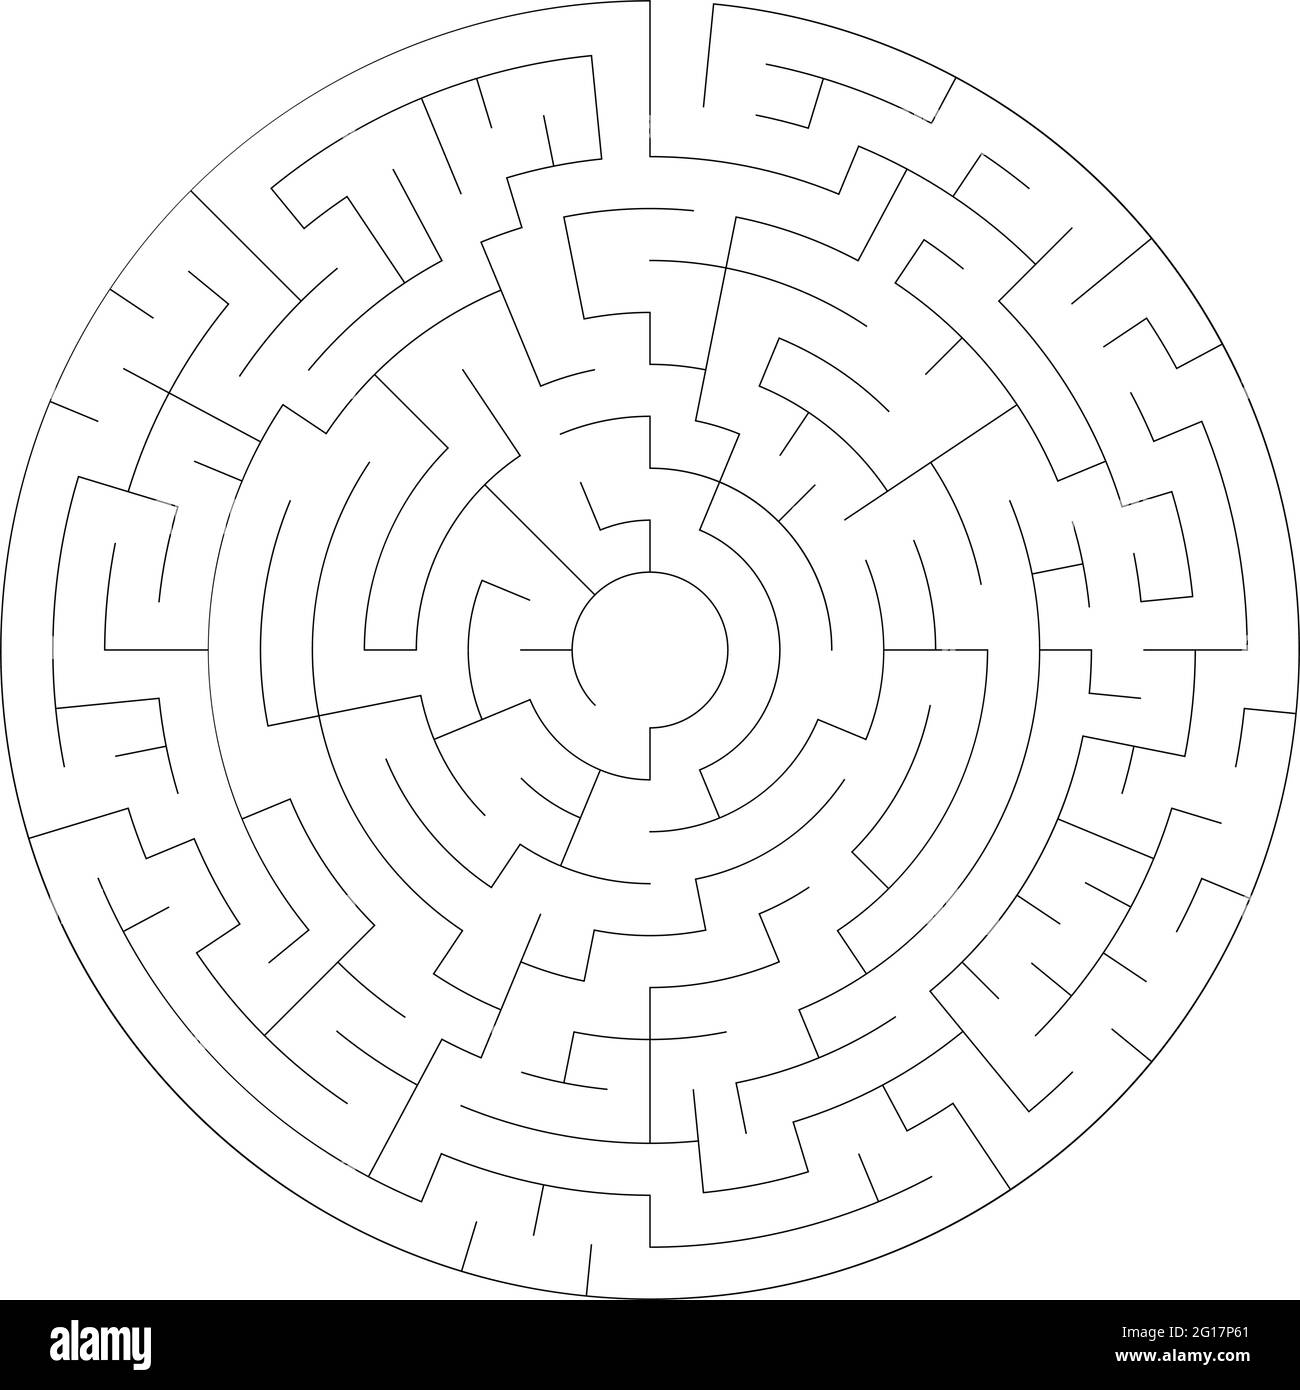 Lösbare Labyrinth Labyrinth-Vektor-Ilustration – Stock-Vektor-Illustration, Clip-Art-Grafiken Stock Vektor